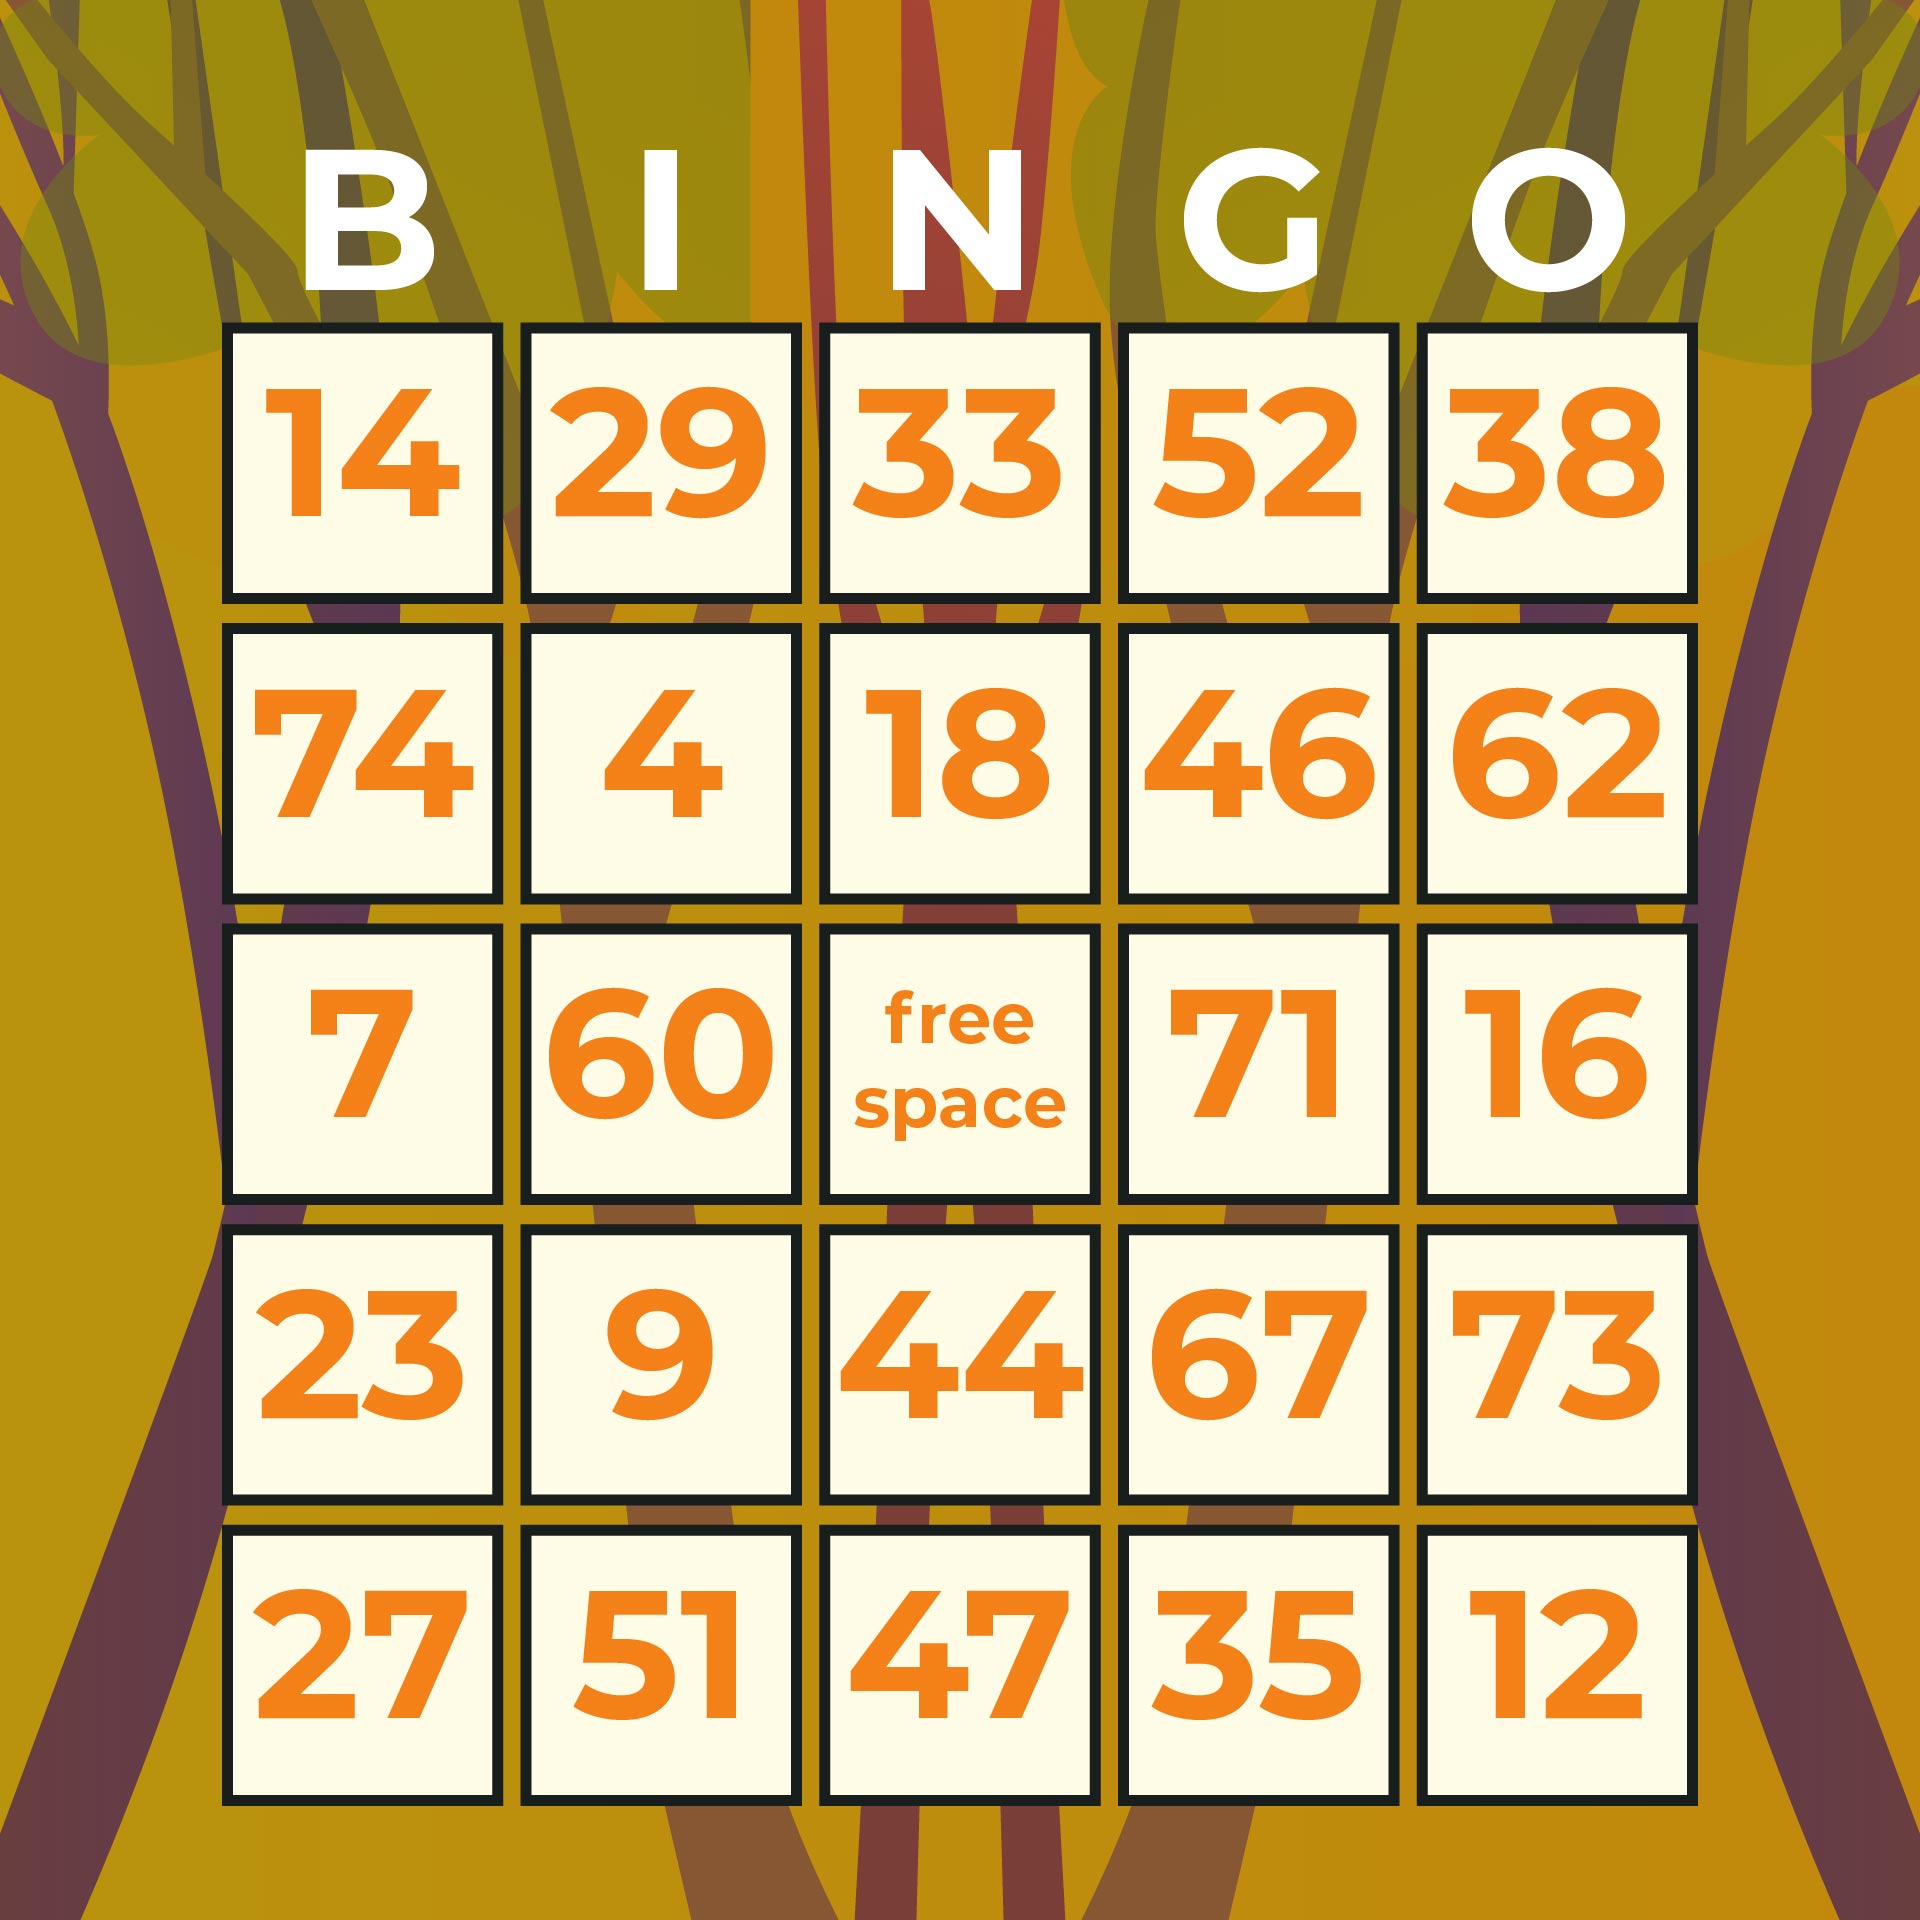 8 Best Free Printable Bingo Numbers Sheet